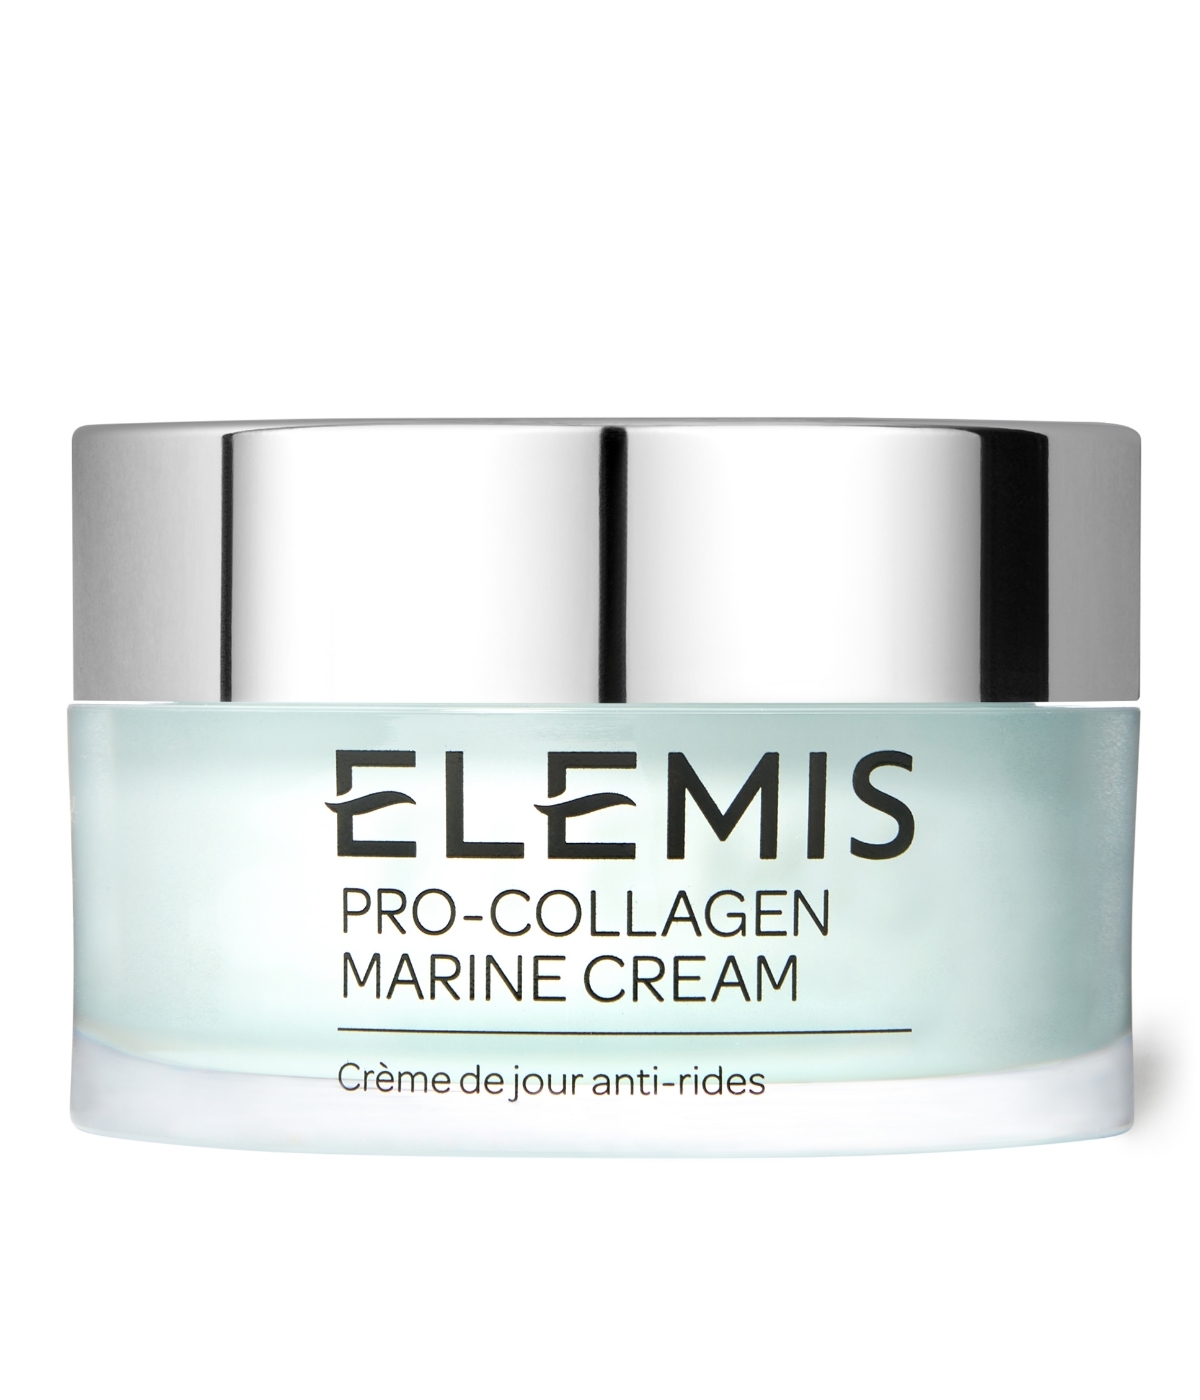 Pro-Collagen Marine Cream de Elemis.